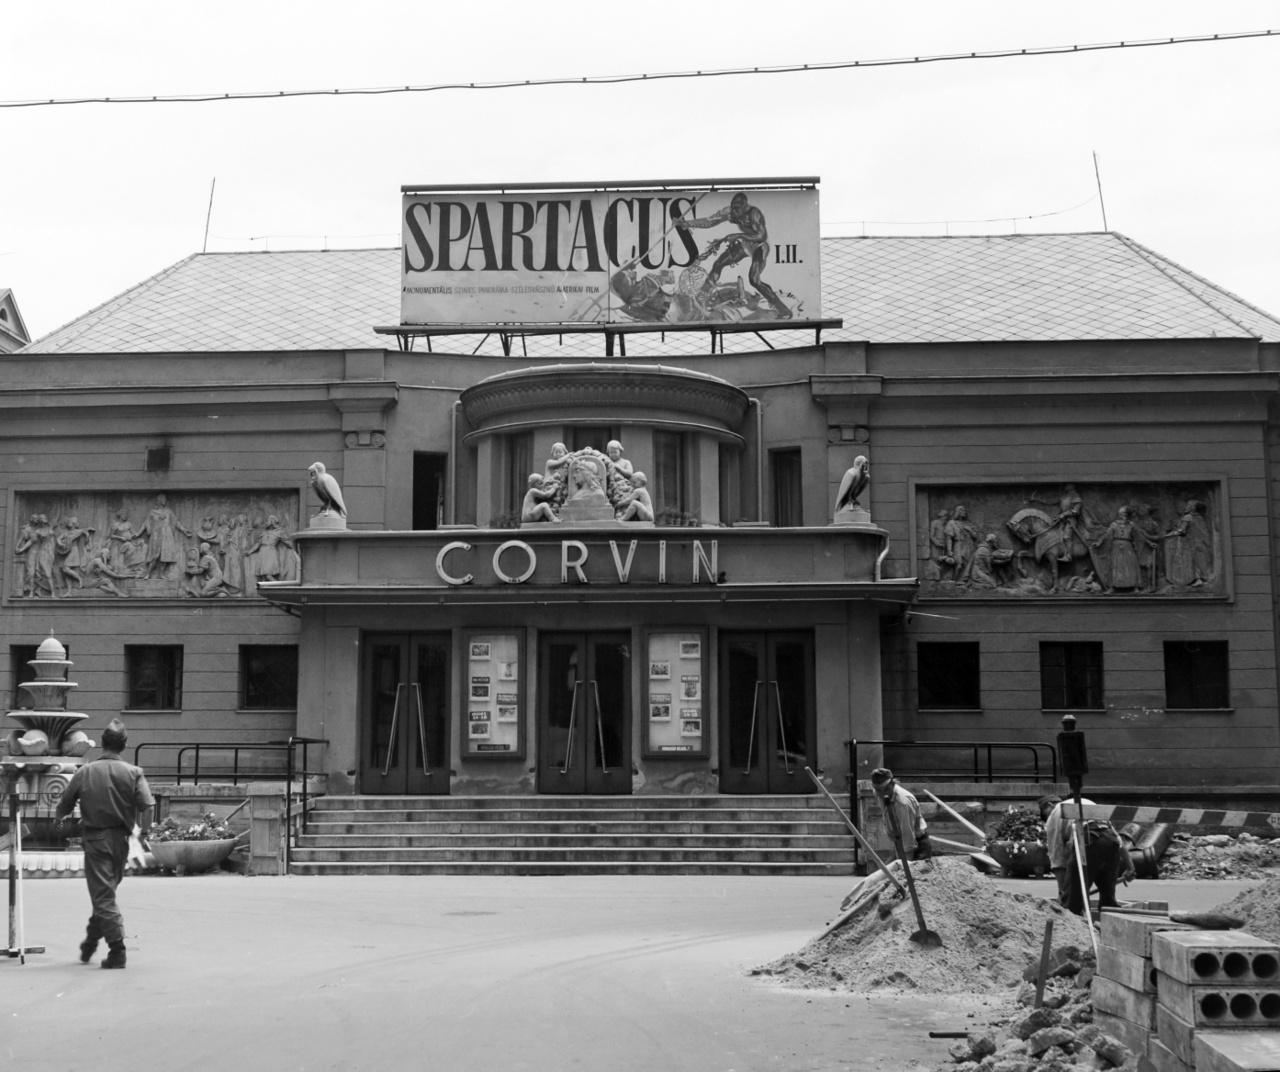 Kirk Douglas legendás filmjét, a Spartacust csak 1970-ben tűzte műsorra a Corvin mozi. Az épület még jóval kisebb volt, mint mai valójában, a kilencvenes években történt felújítása után. A tizenöt évvel korábbi fegyveres harc nyomai nem látszanak a fényképen, de tudjuk, hogy az egykori sarokház helyére már új épület került. A munkálatok csatornázásra utalnak, de a mozi töretlenül működik, és tetején a két részes színes – panoráma – szélesvásznú amerikai filmet, a Spartacust (R. Stanley Kubrick, 1960) hirdetik óriási betűkkel és egy rajzolt gladiátorjelenettel.